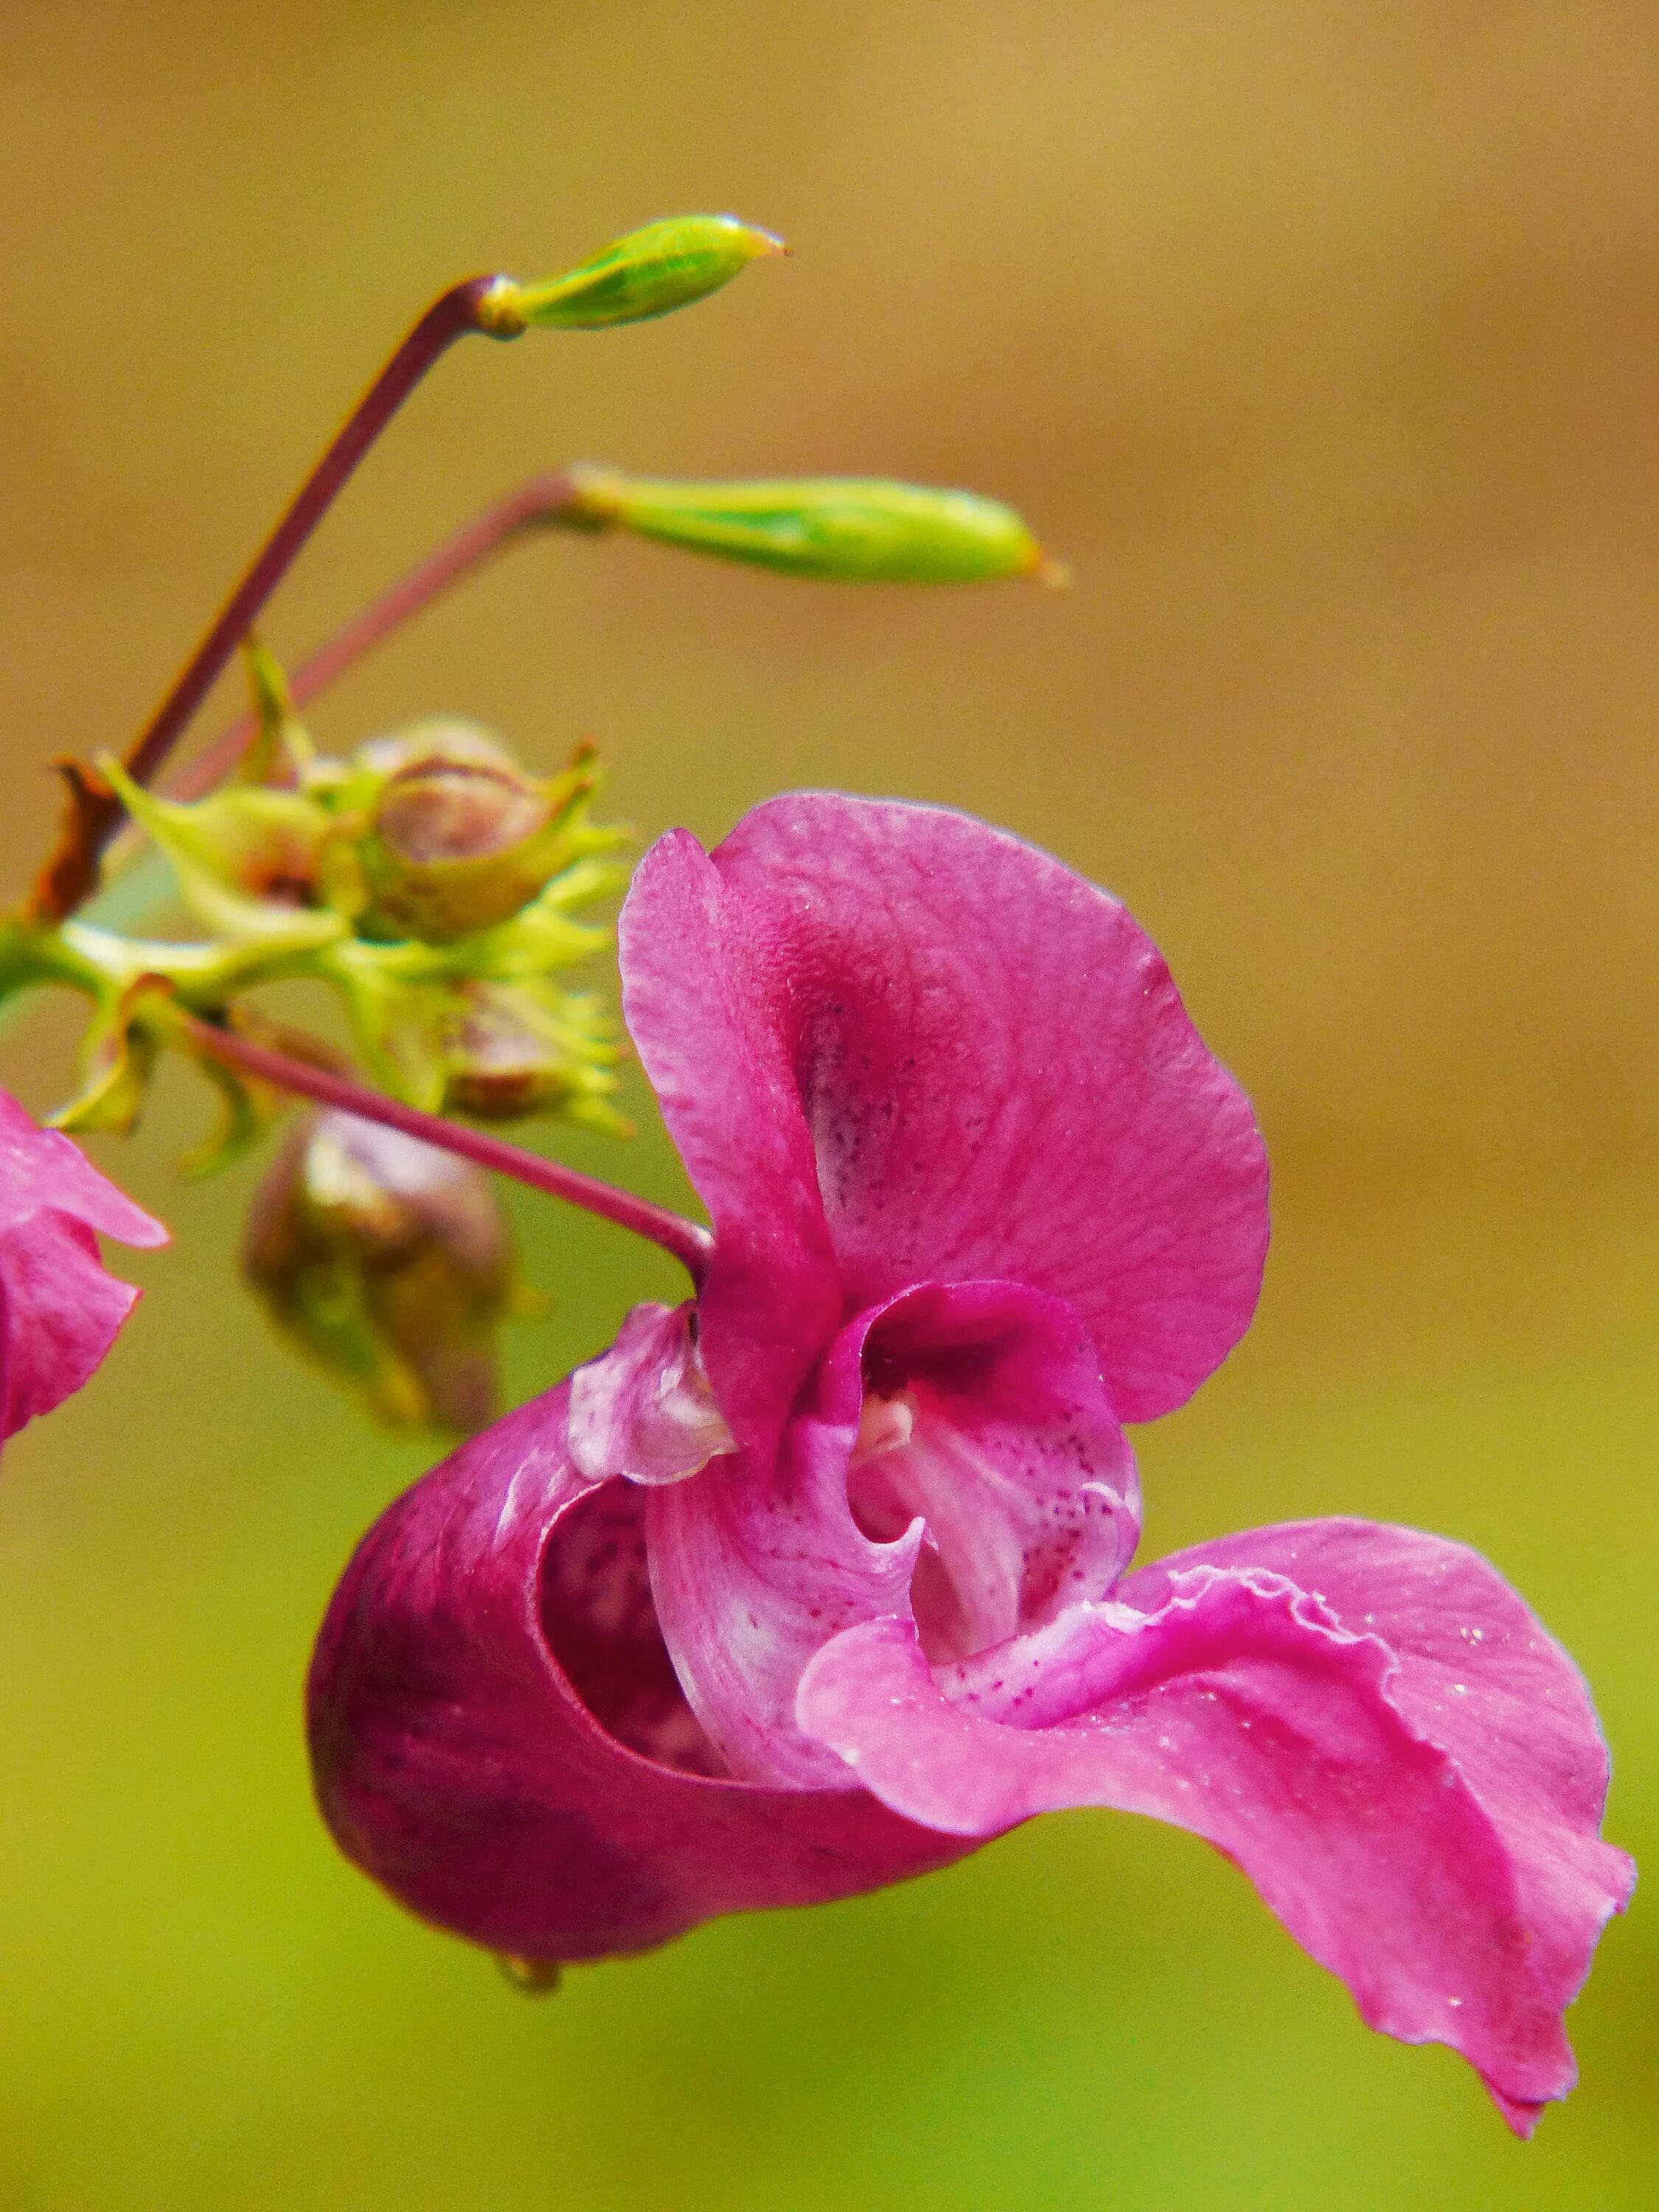 Дикий цветок на русском. Himalayan balsam растение. Цветок Бандхука. Растение с розовыми цветами. Дикорастущие цветы.